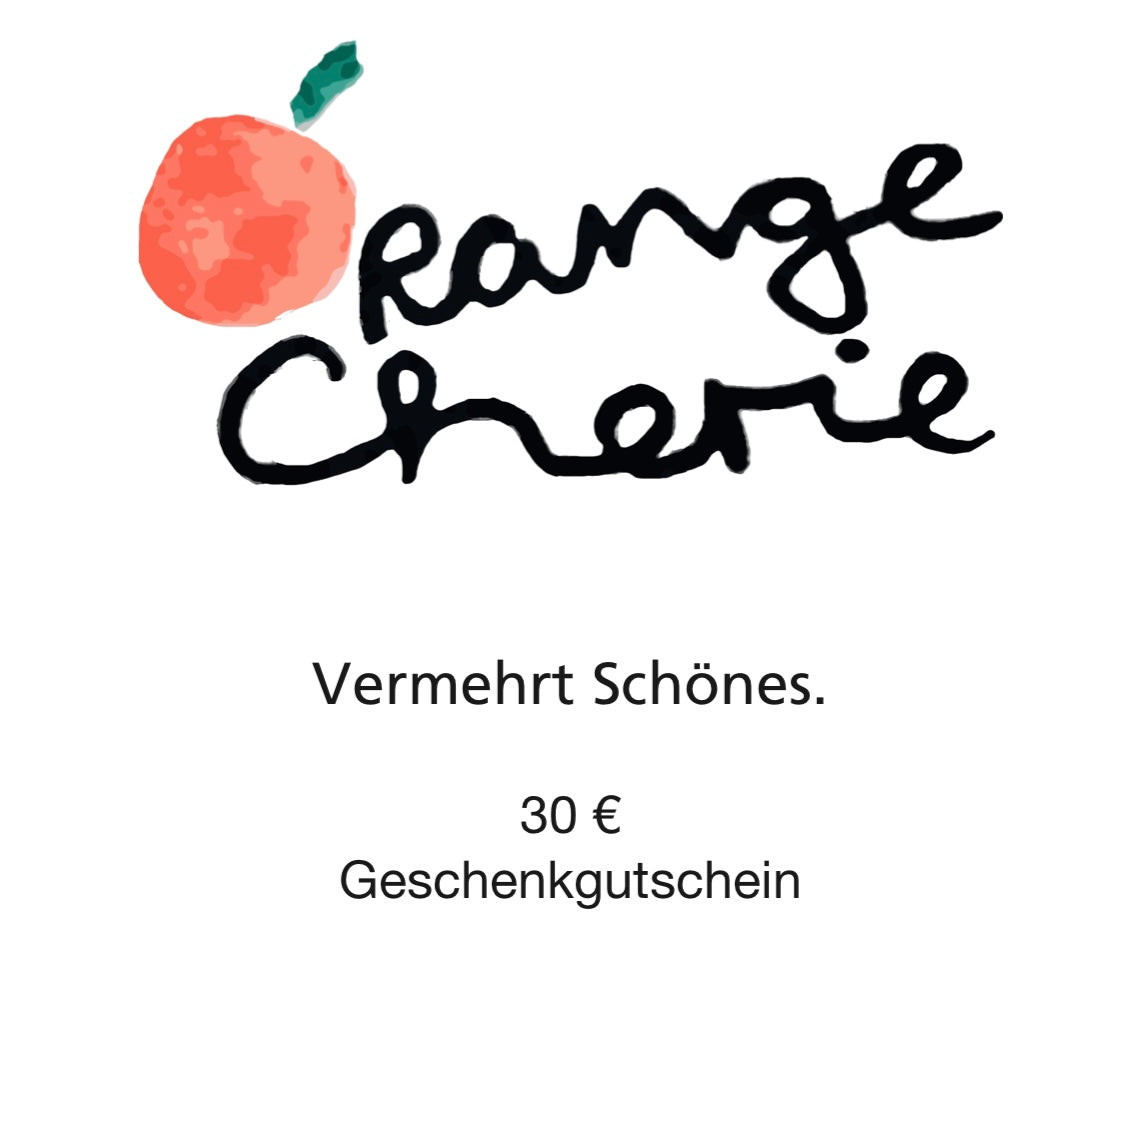 🍊 OrangeCherie Gutschein